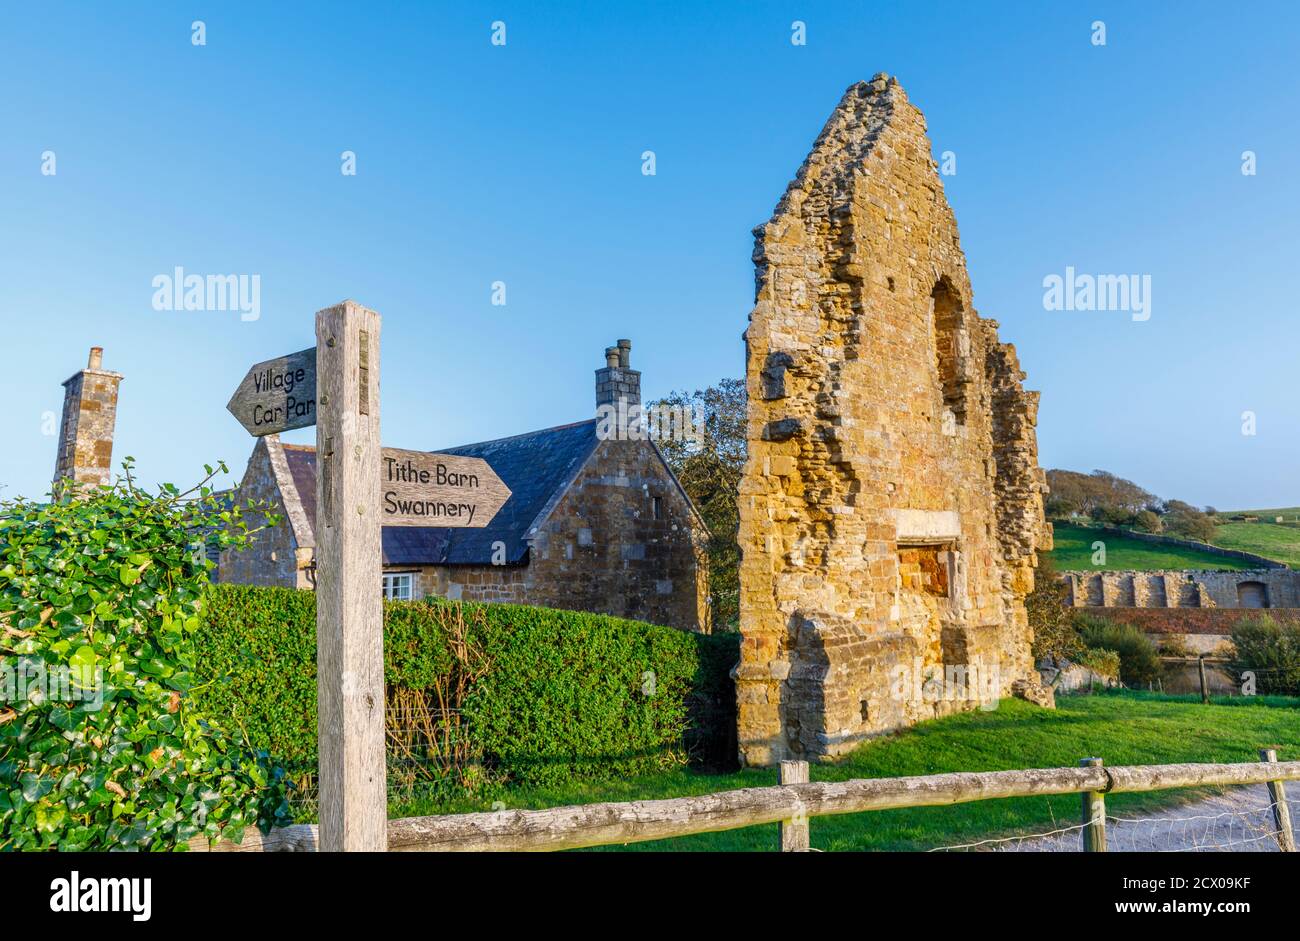 La pared final arruinada del comedor de los monjes o refectorio de la Abadía de Abbotsbury, un antiguo monasterio benedictino en Abbotsbury, Devon, al sureste de Inglaterra Foto de stock